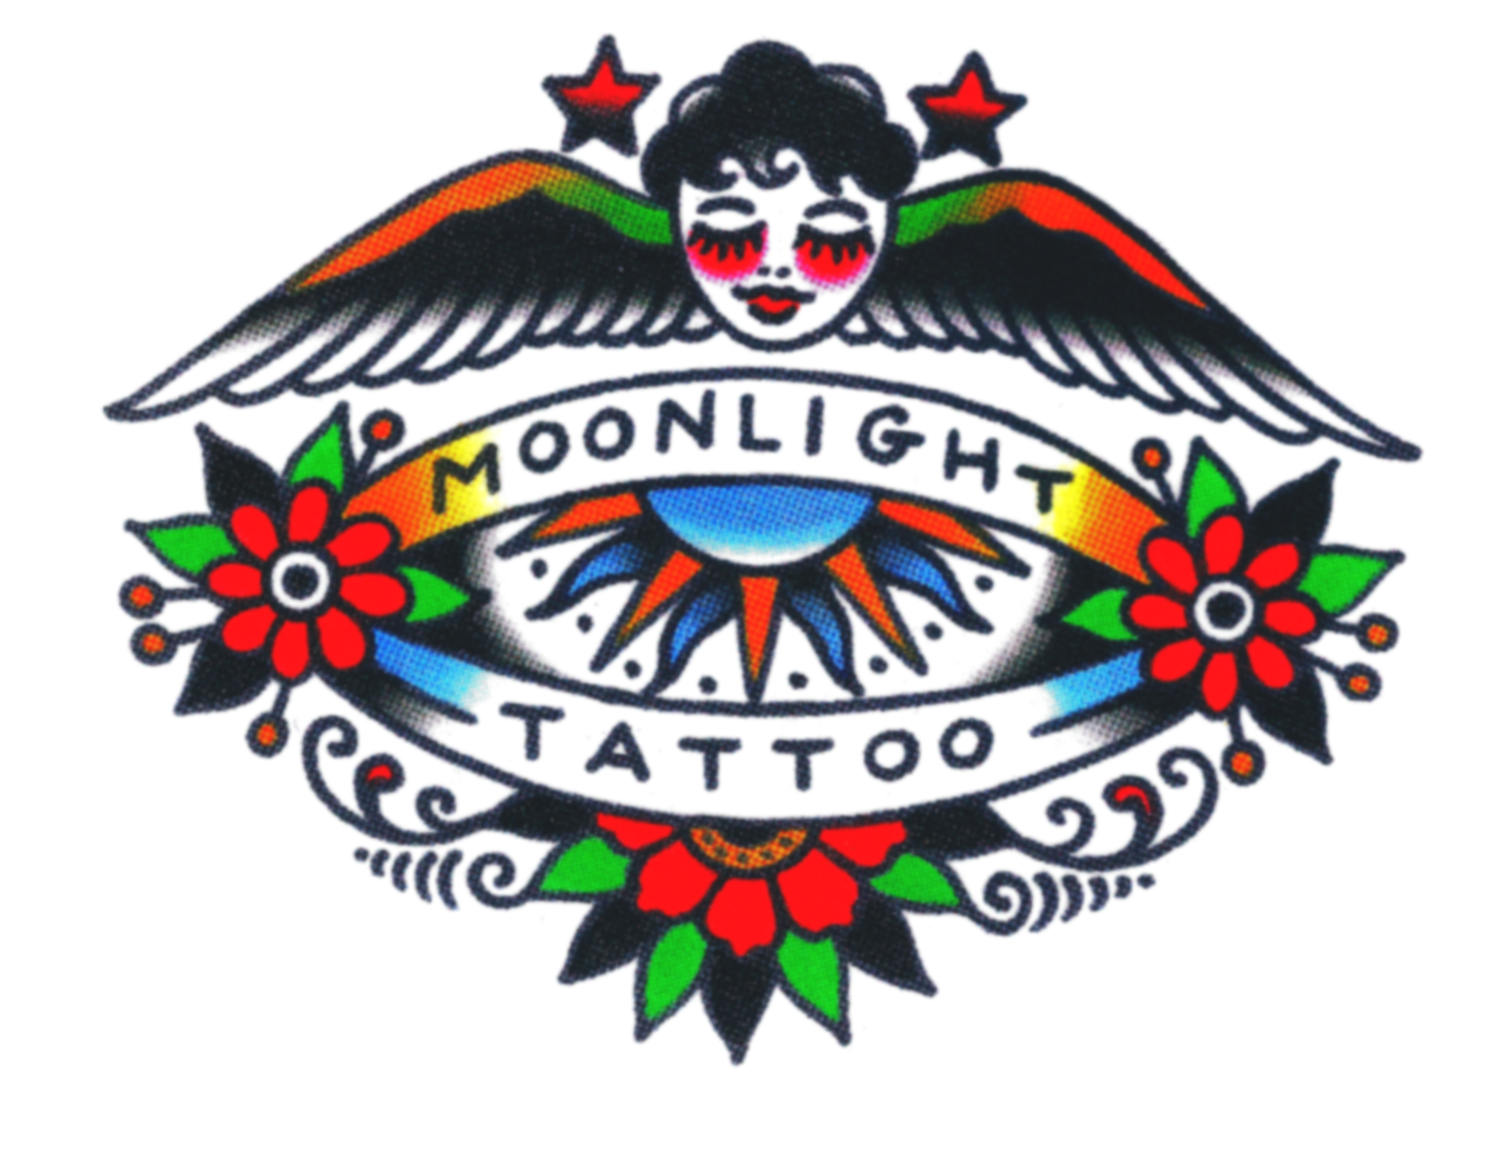 Moonlight Tattoo